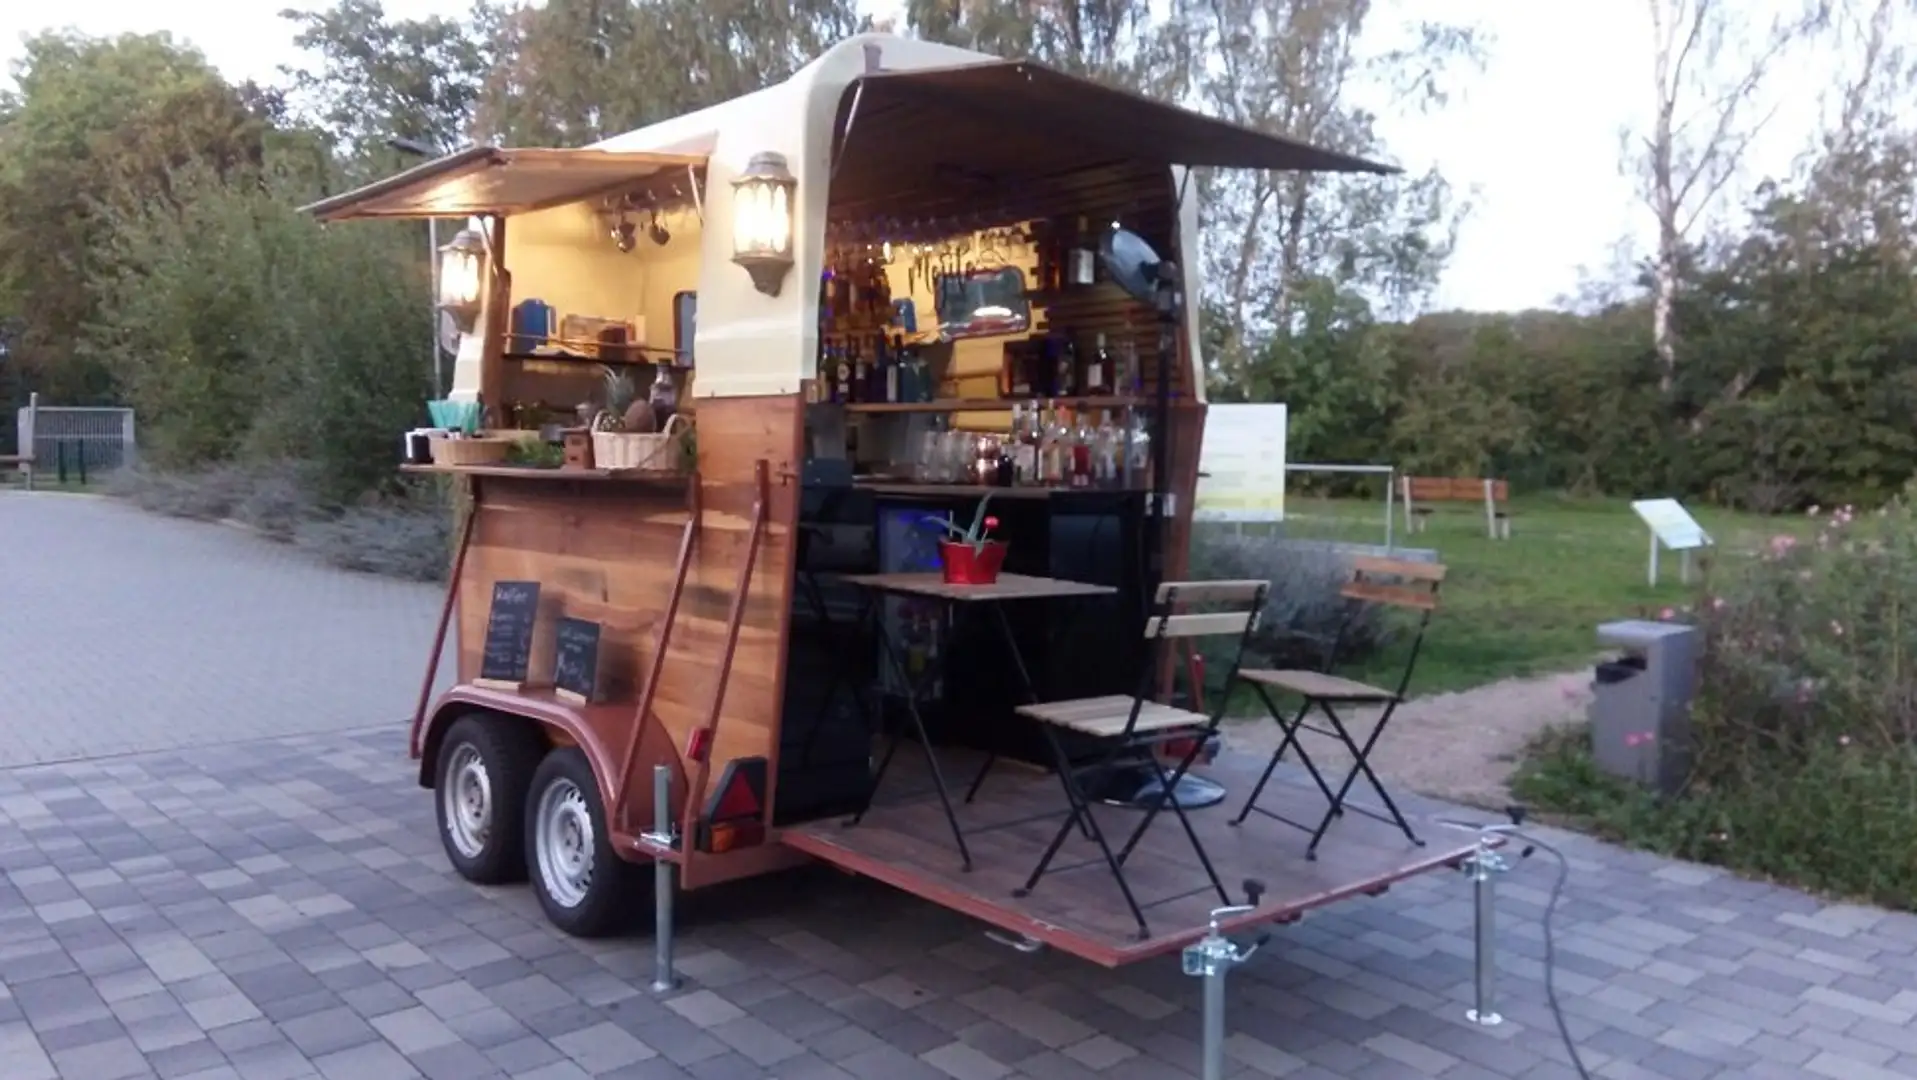 Trailer-Anhänger Verkaufsanhänger mobile Bar Pferdeanhänger Beżowy - 1